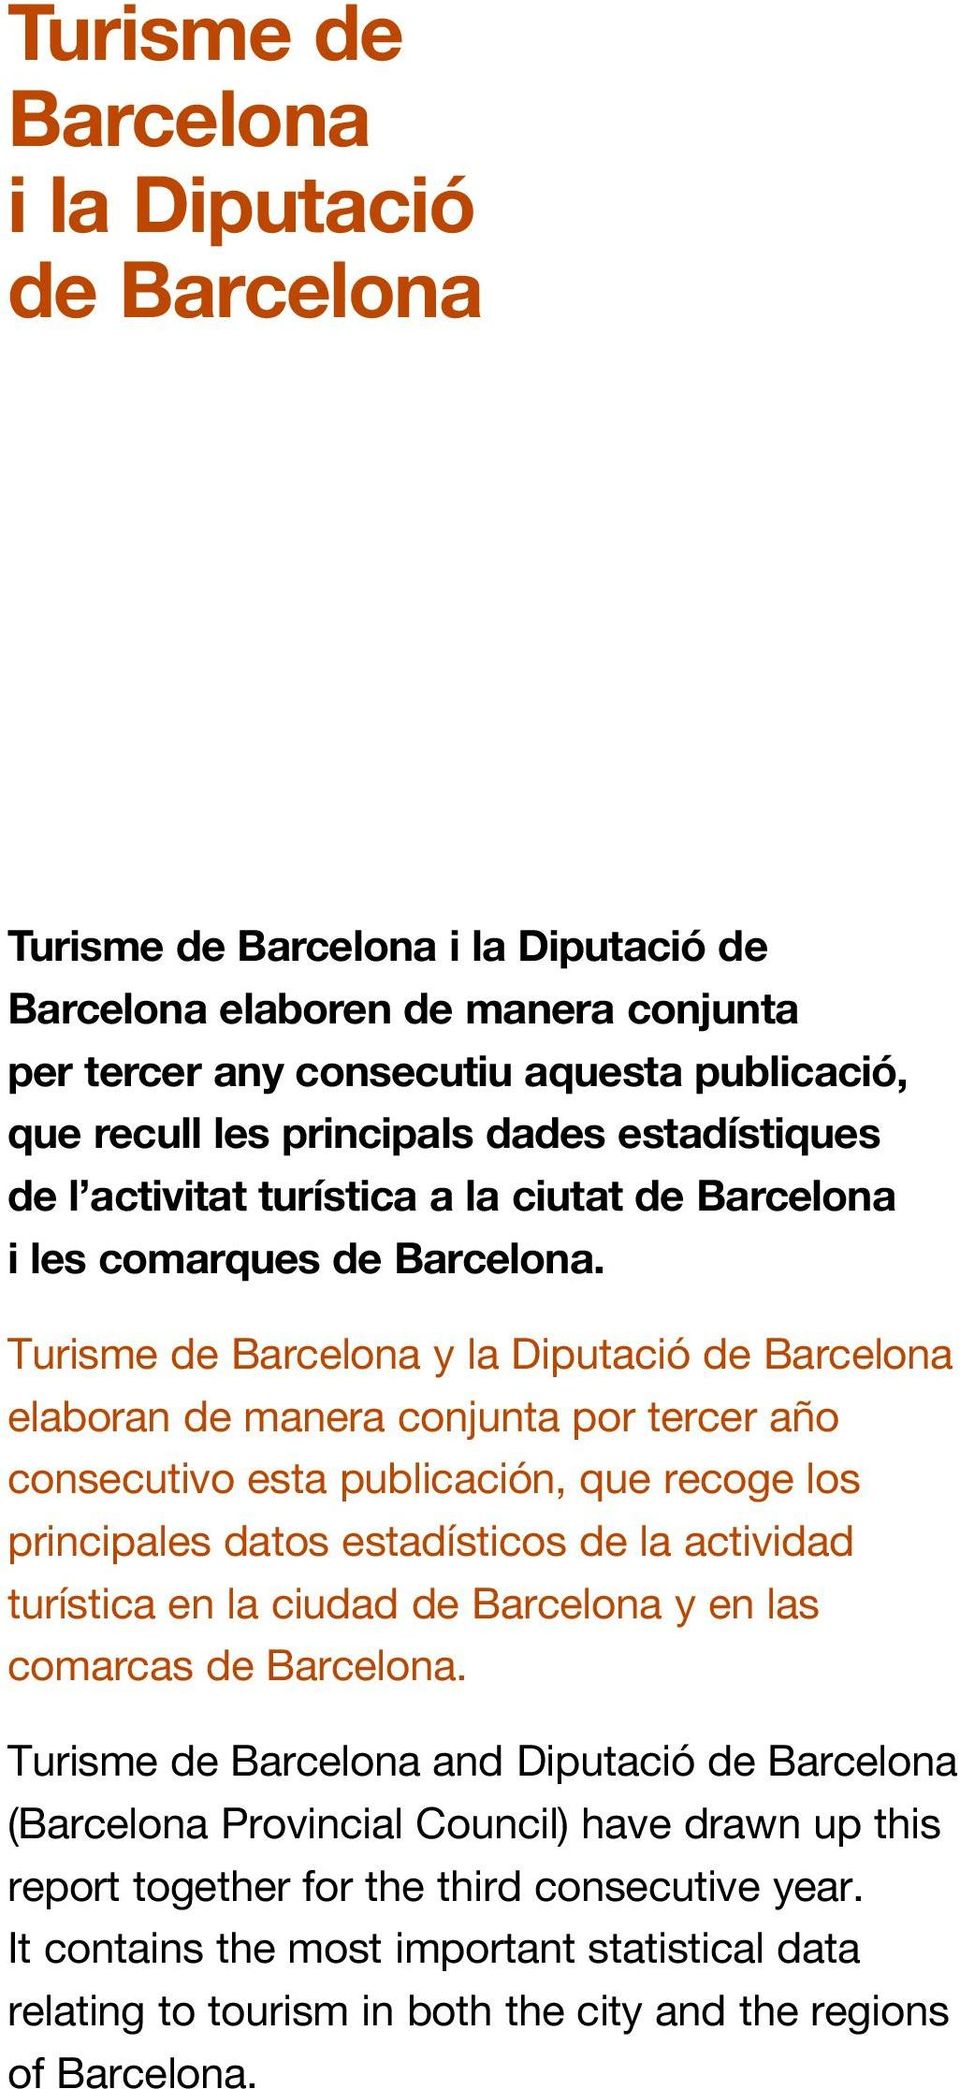 Turisme de Barcelona y la Diputació de Barcelona elaboran de manera conjunta por tercer año consecutivo esta publicación, que recoge los principales datos estadísticos de la actividad turística en la